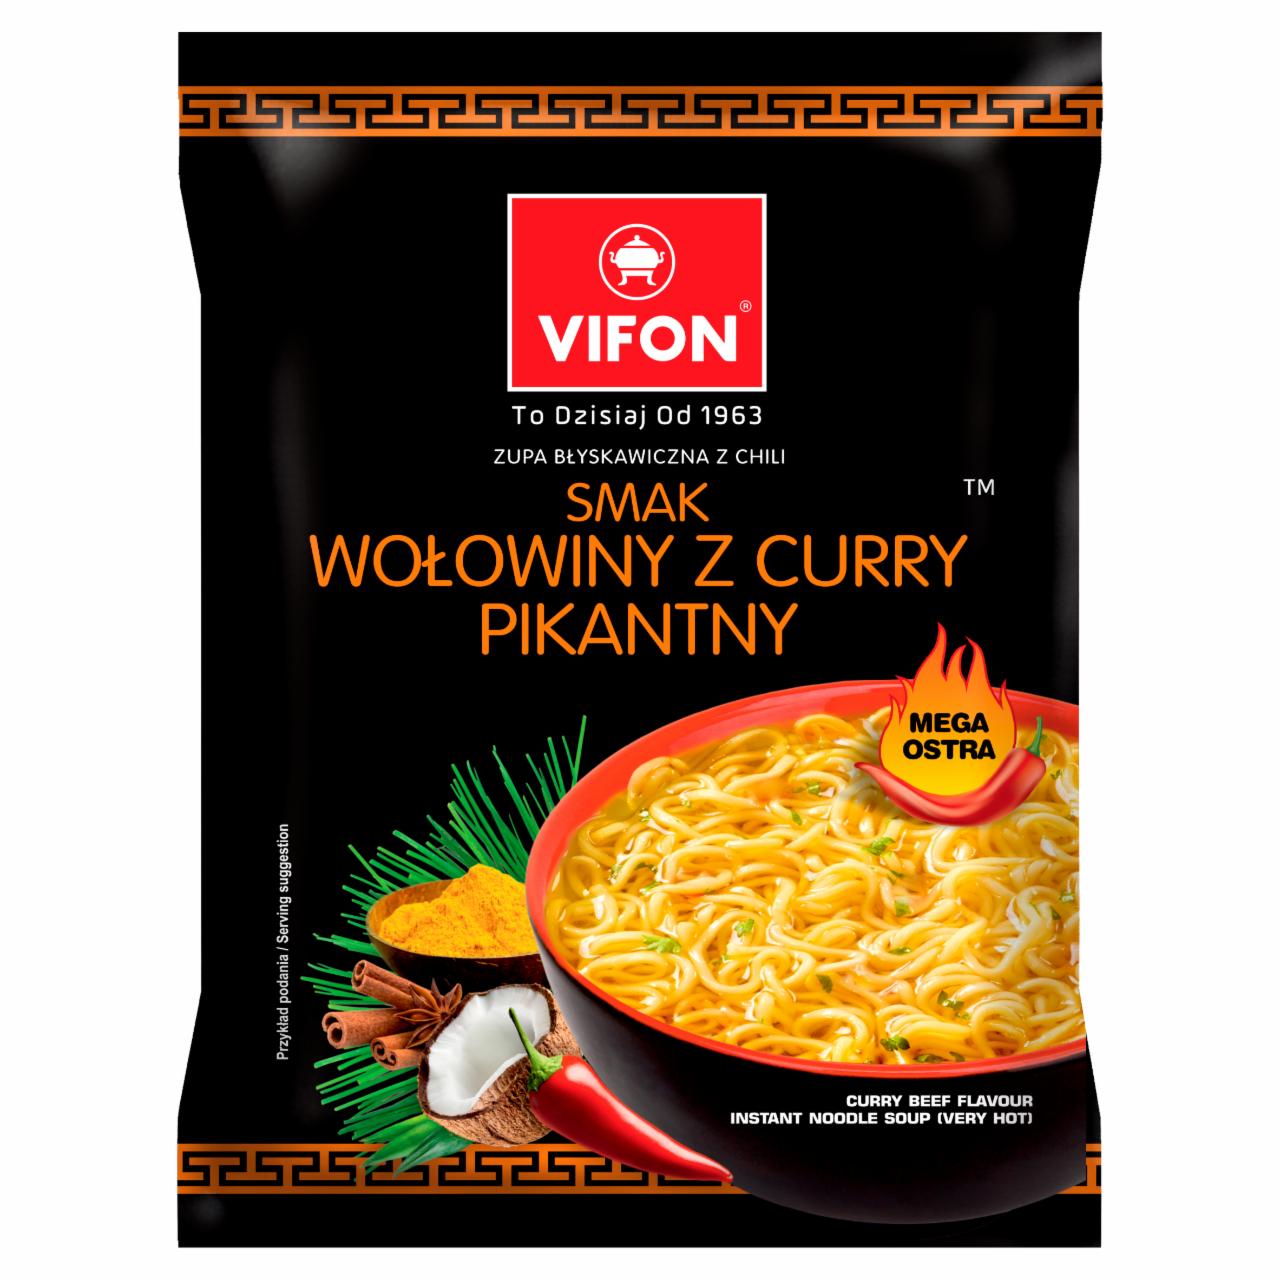 Zdjęcia - Zupa błyskawiczna smak wołowiny z curry pikantny Vifon